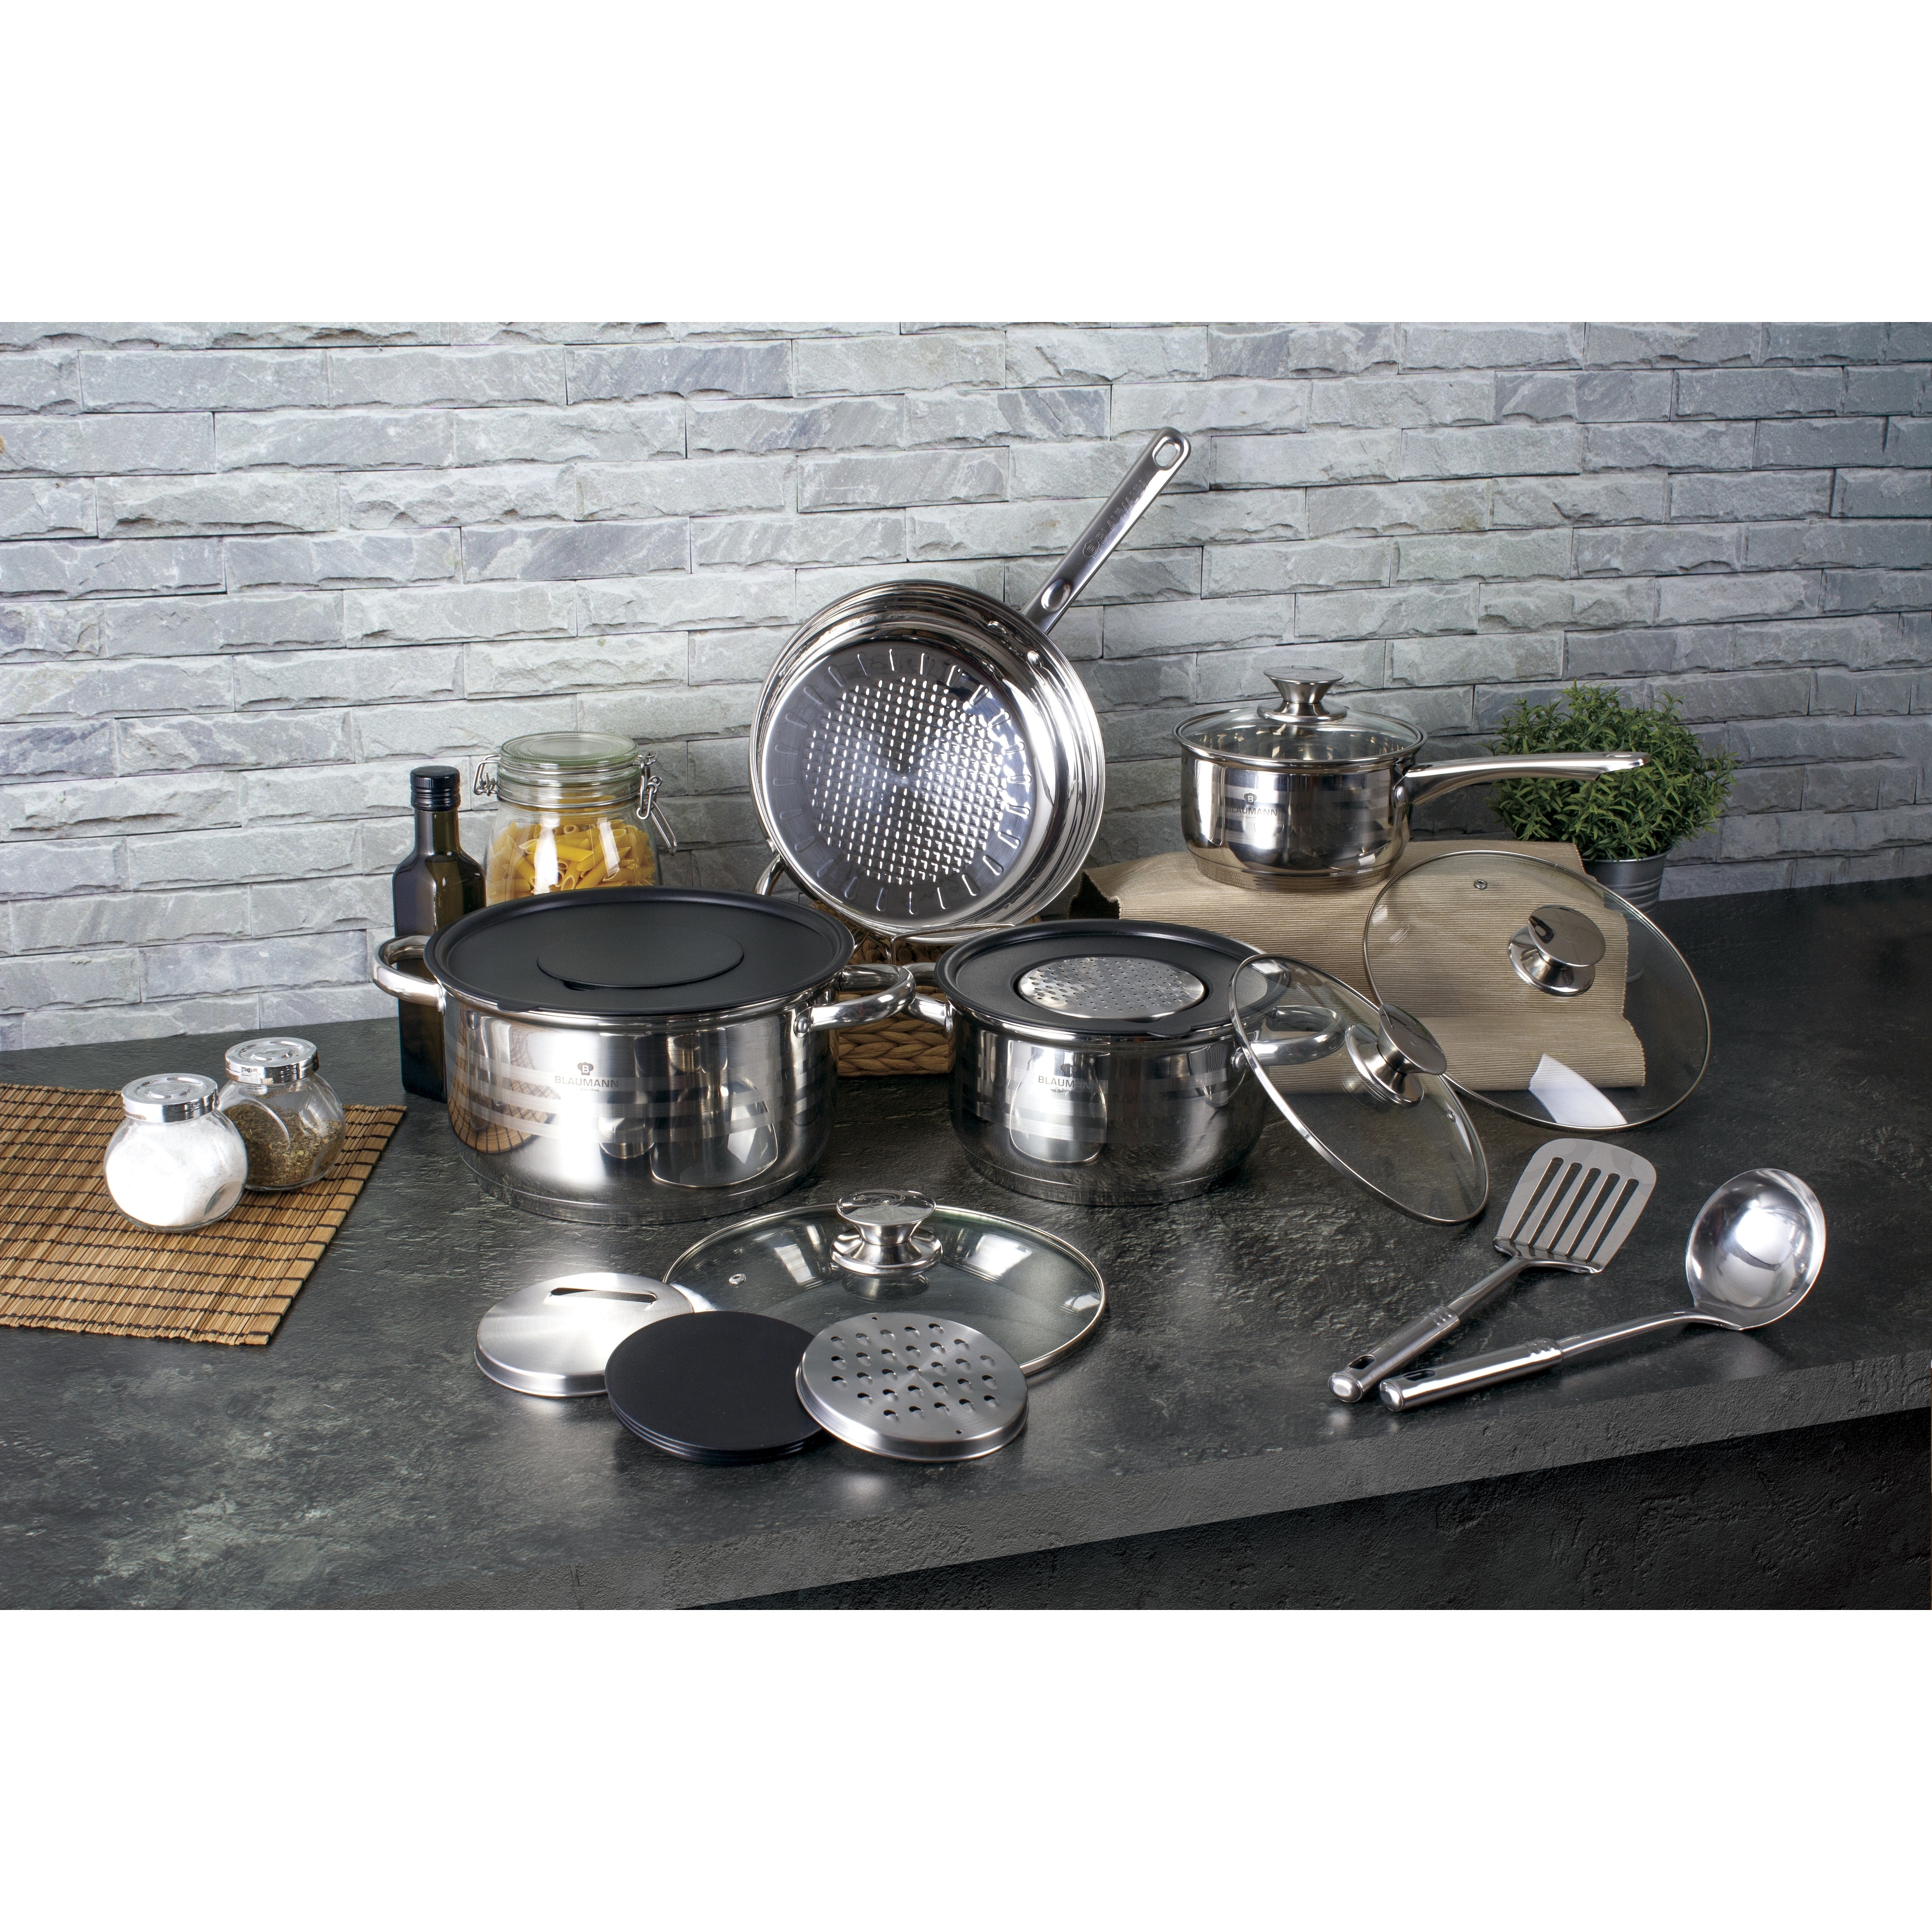 https://ak1.ostkcdn.com/images/products/is/images/direct/17e6c068b51f79d866d4fd1f5faa5eaa6815f494/Blaumann-15-Piece-Stainless-Steel-Cookware-Set.jpg